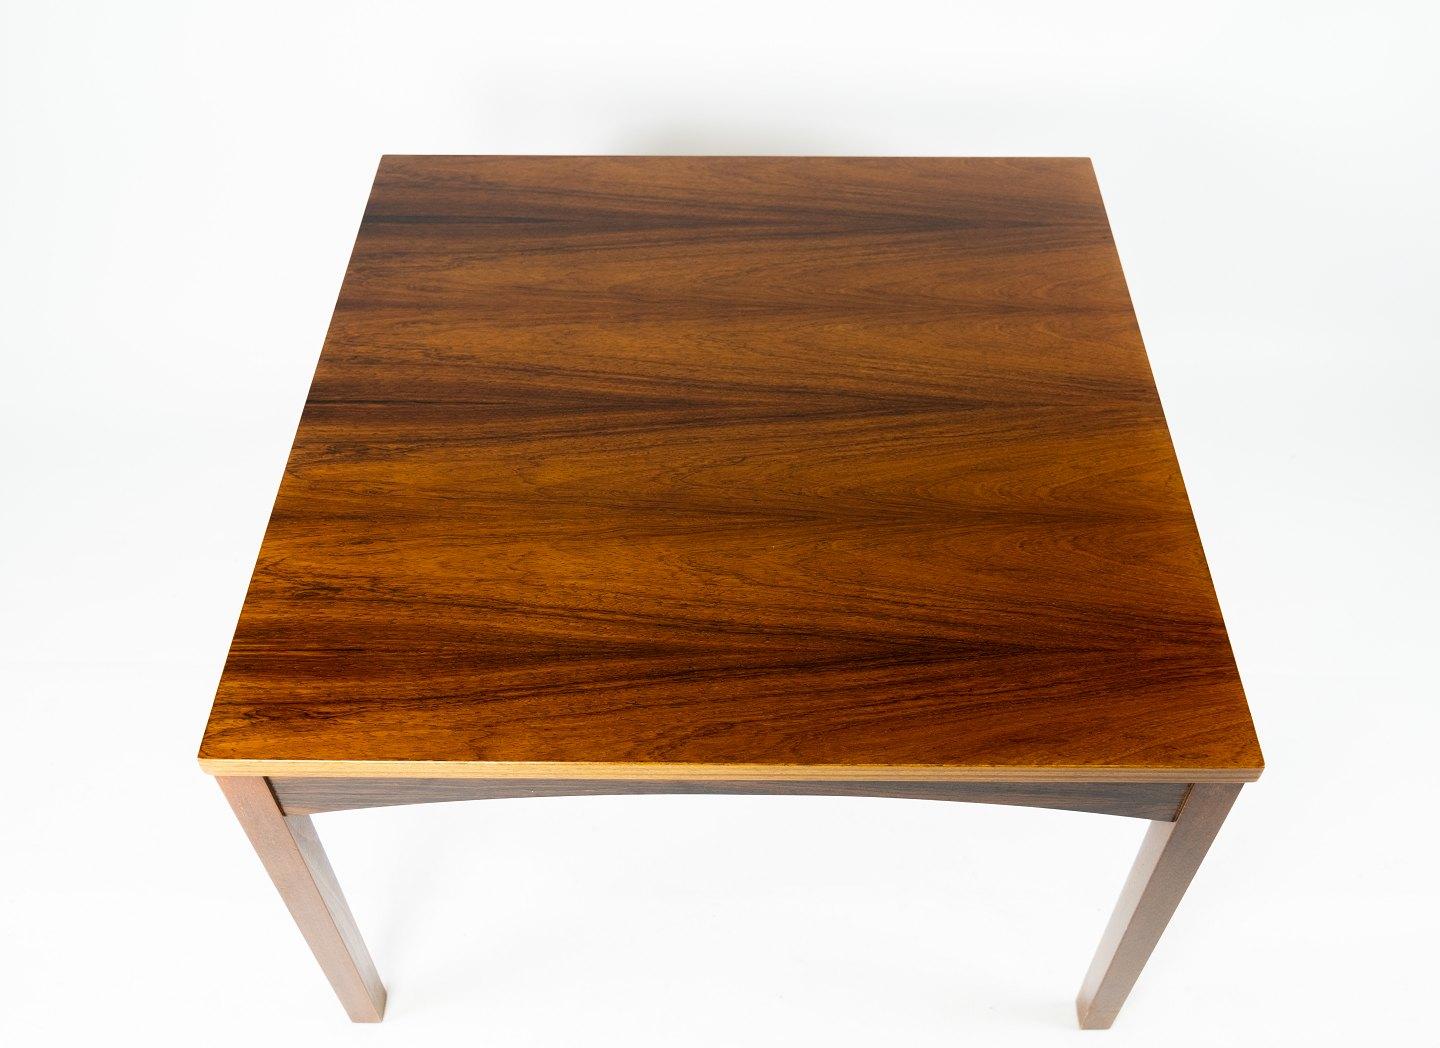 Couchtisch aus Palisanderholz mit dänischem Design aus den 1960er Jahren. Der Tisch ist in einem sehr guten Vintage-Zustand.
Maße: H - 45 cm, B - 70 cm und T - 70 cm.